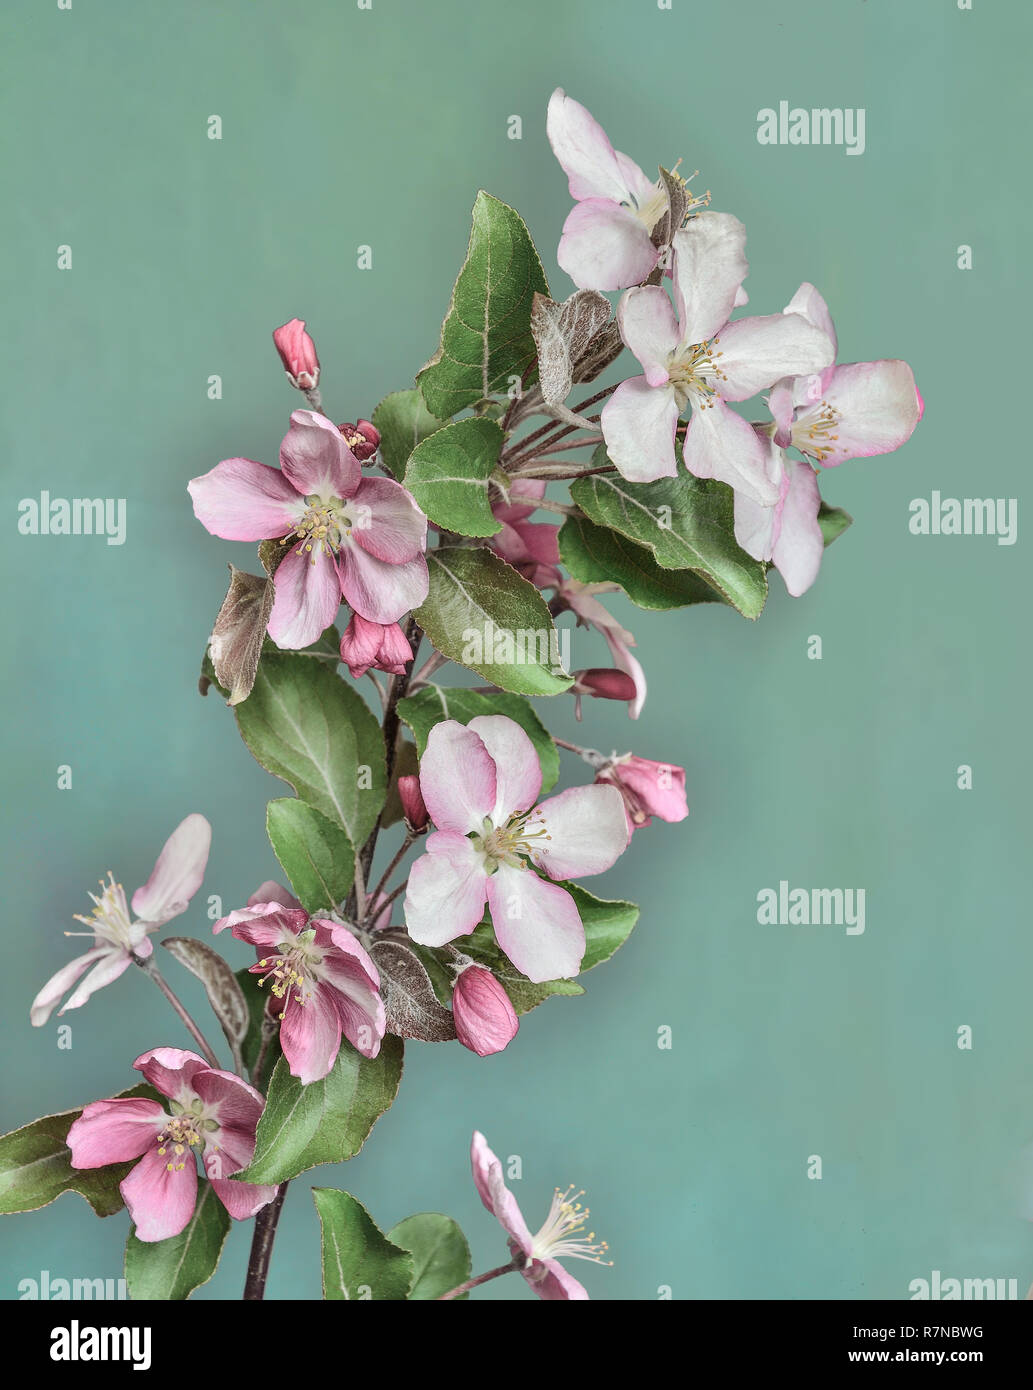 Filiale der blühenden Apfelbaum mit rosa Blüten und Blätter in der Nähe, im alten Stil auf einem Kalk farbigen Hintergrund isoliert. Sanfte Frühling Hintergrund Stockfoto